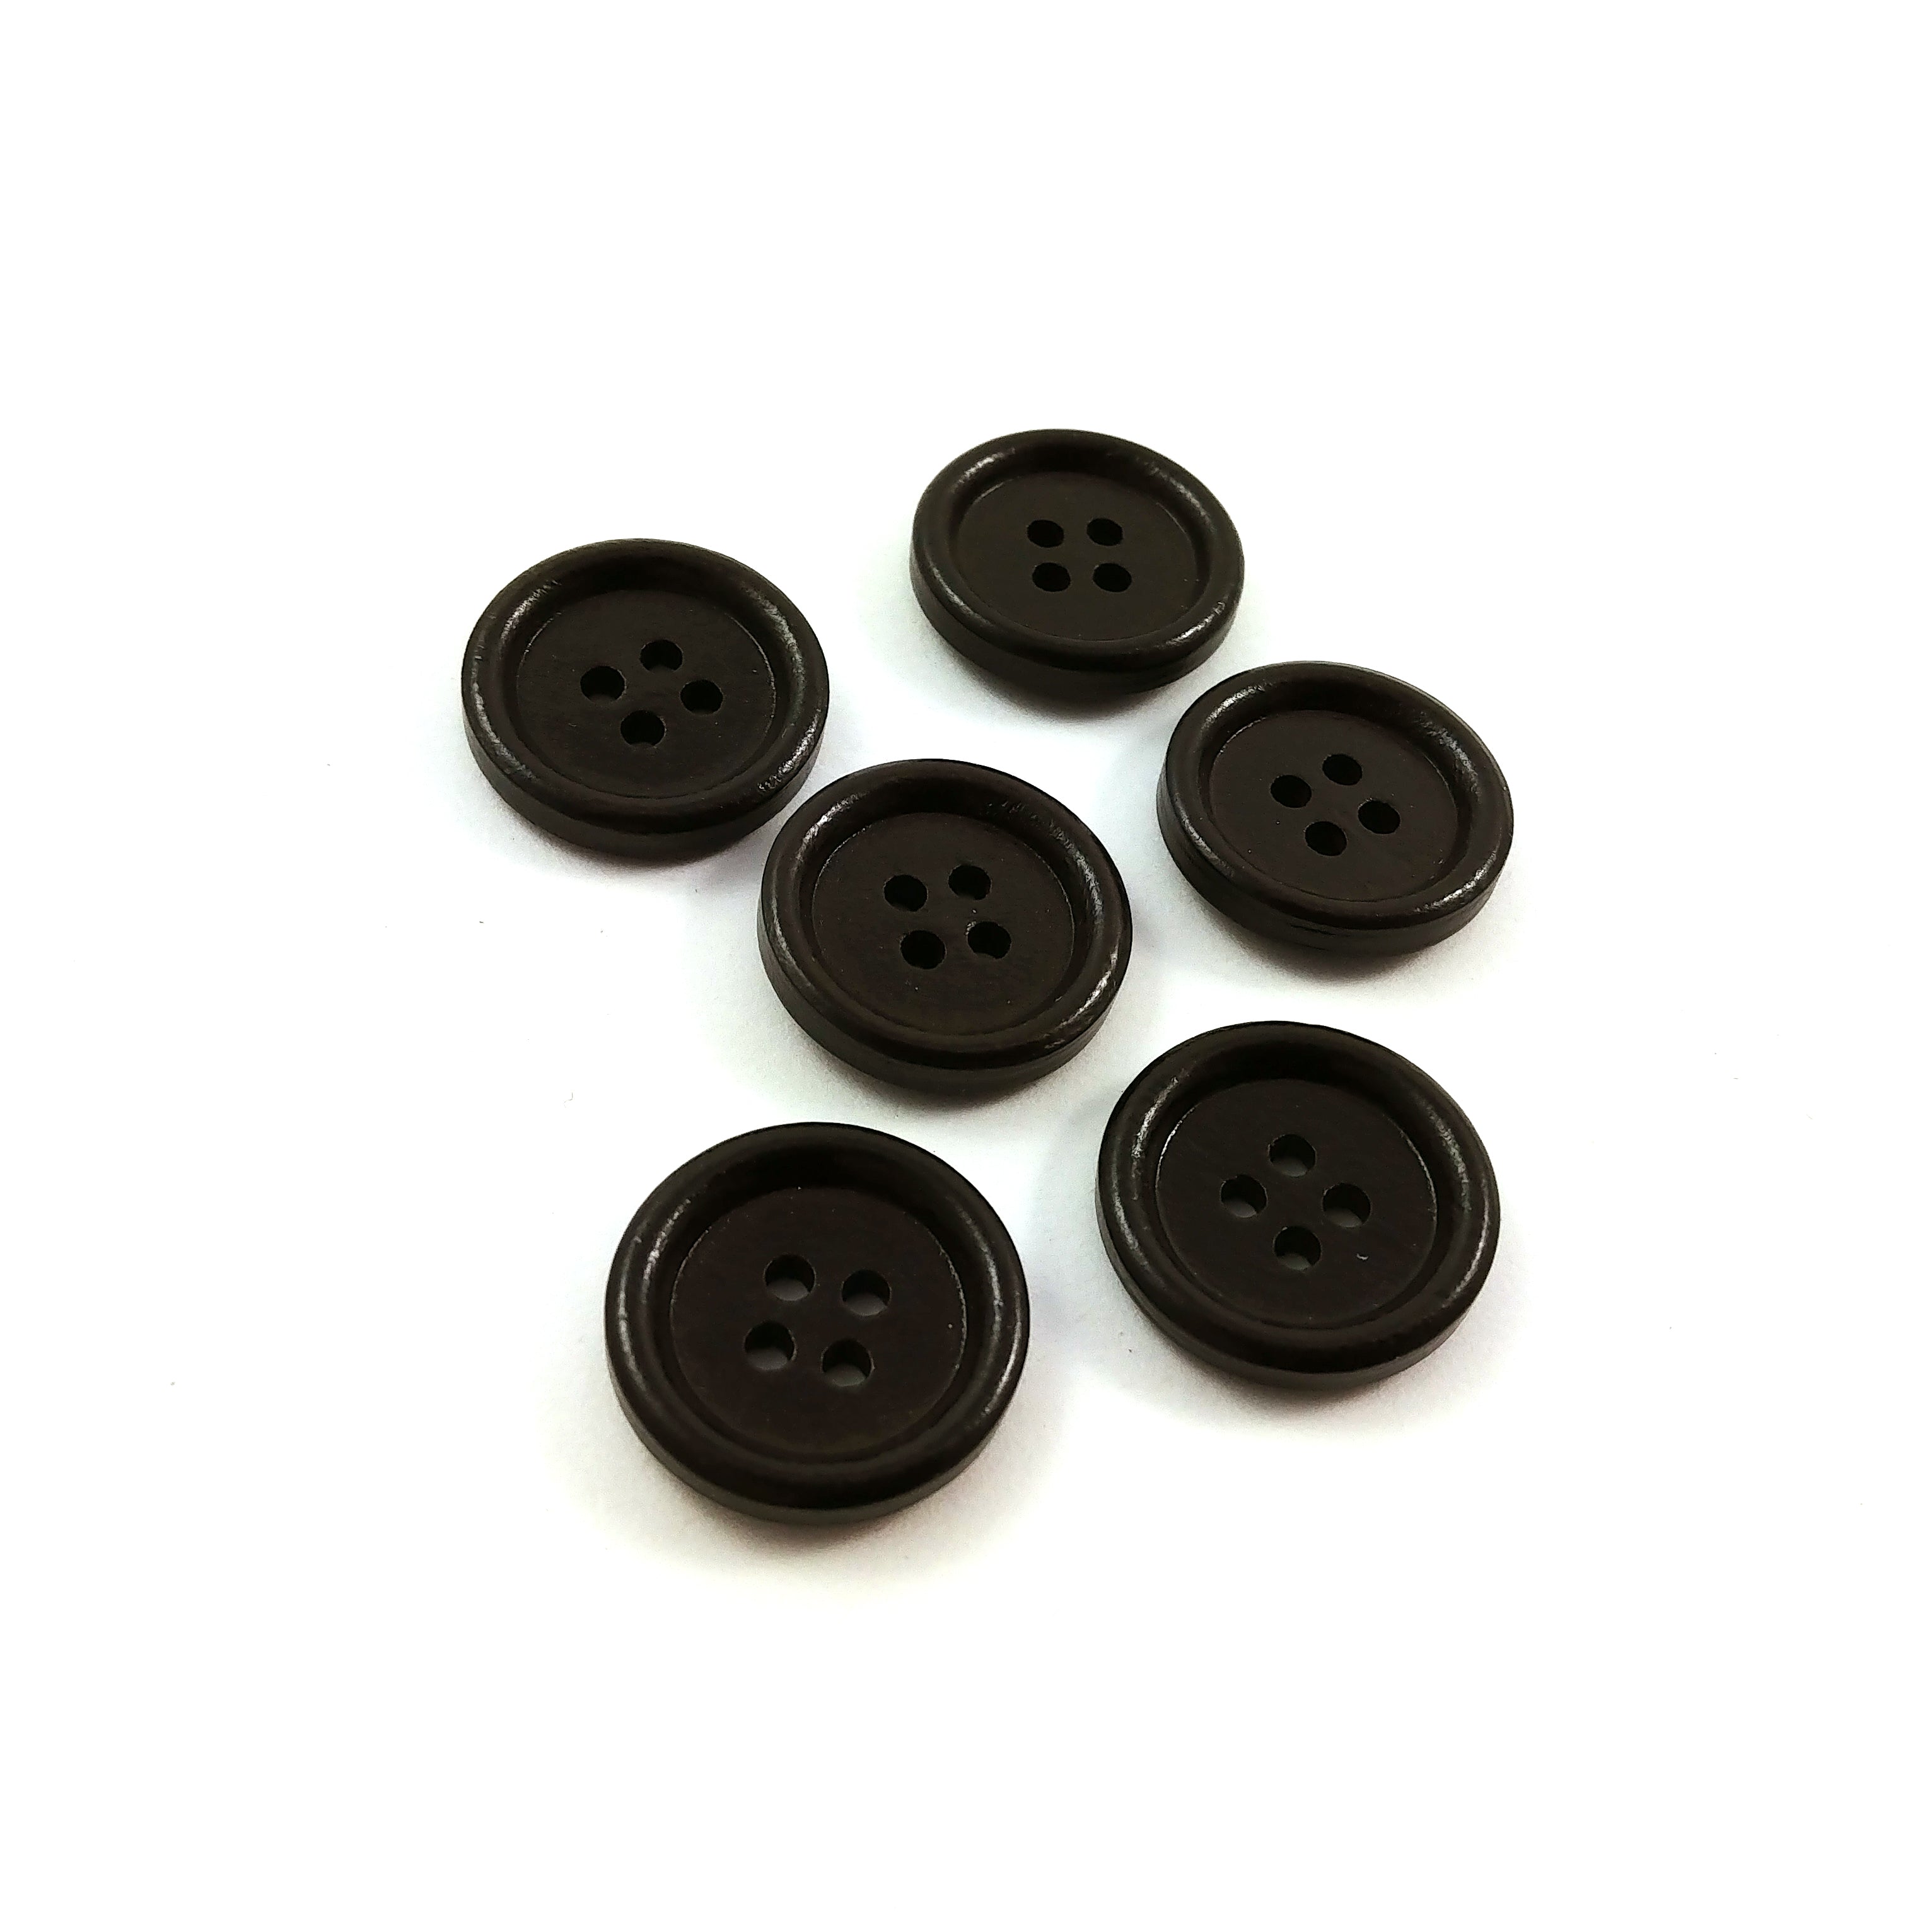 Bouton de bois brun foncé de 1.8cm - ensemble de 6 boutons en bois teint